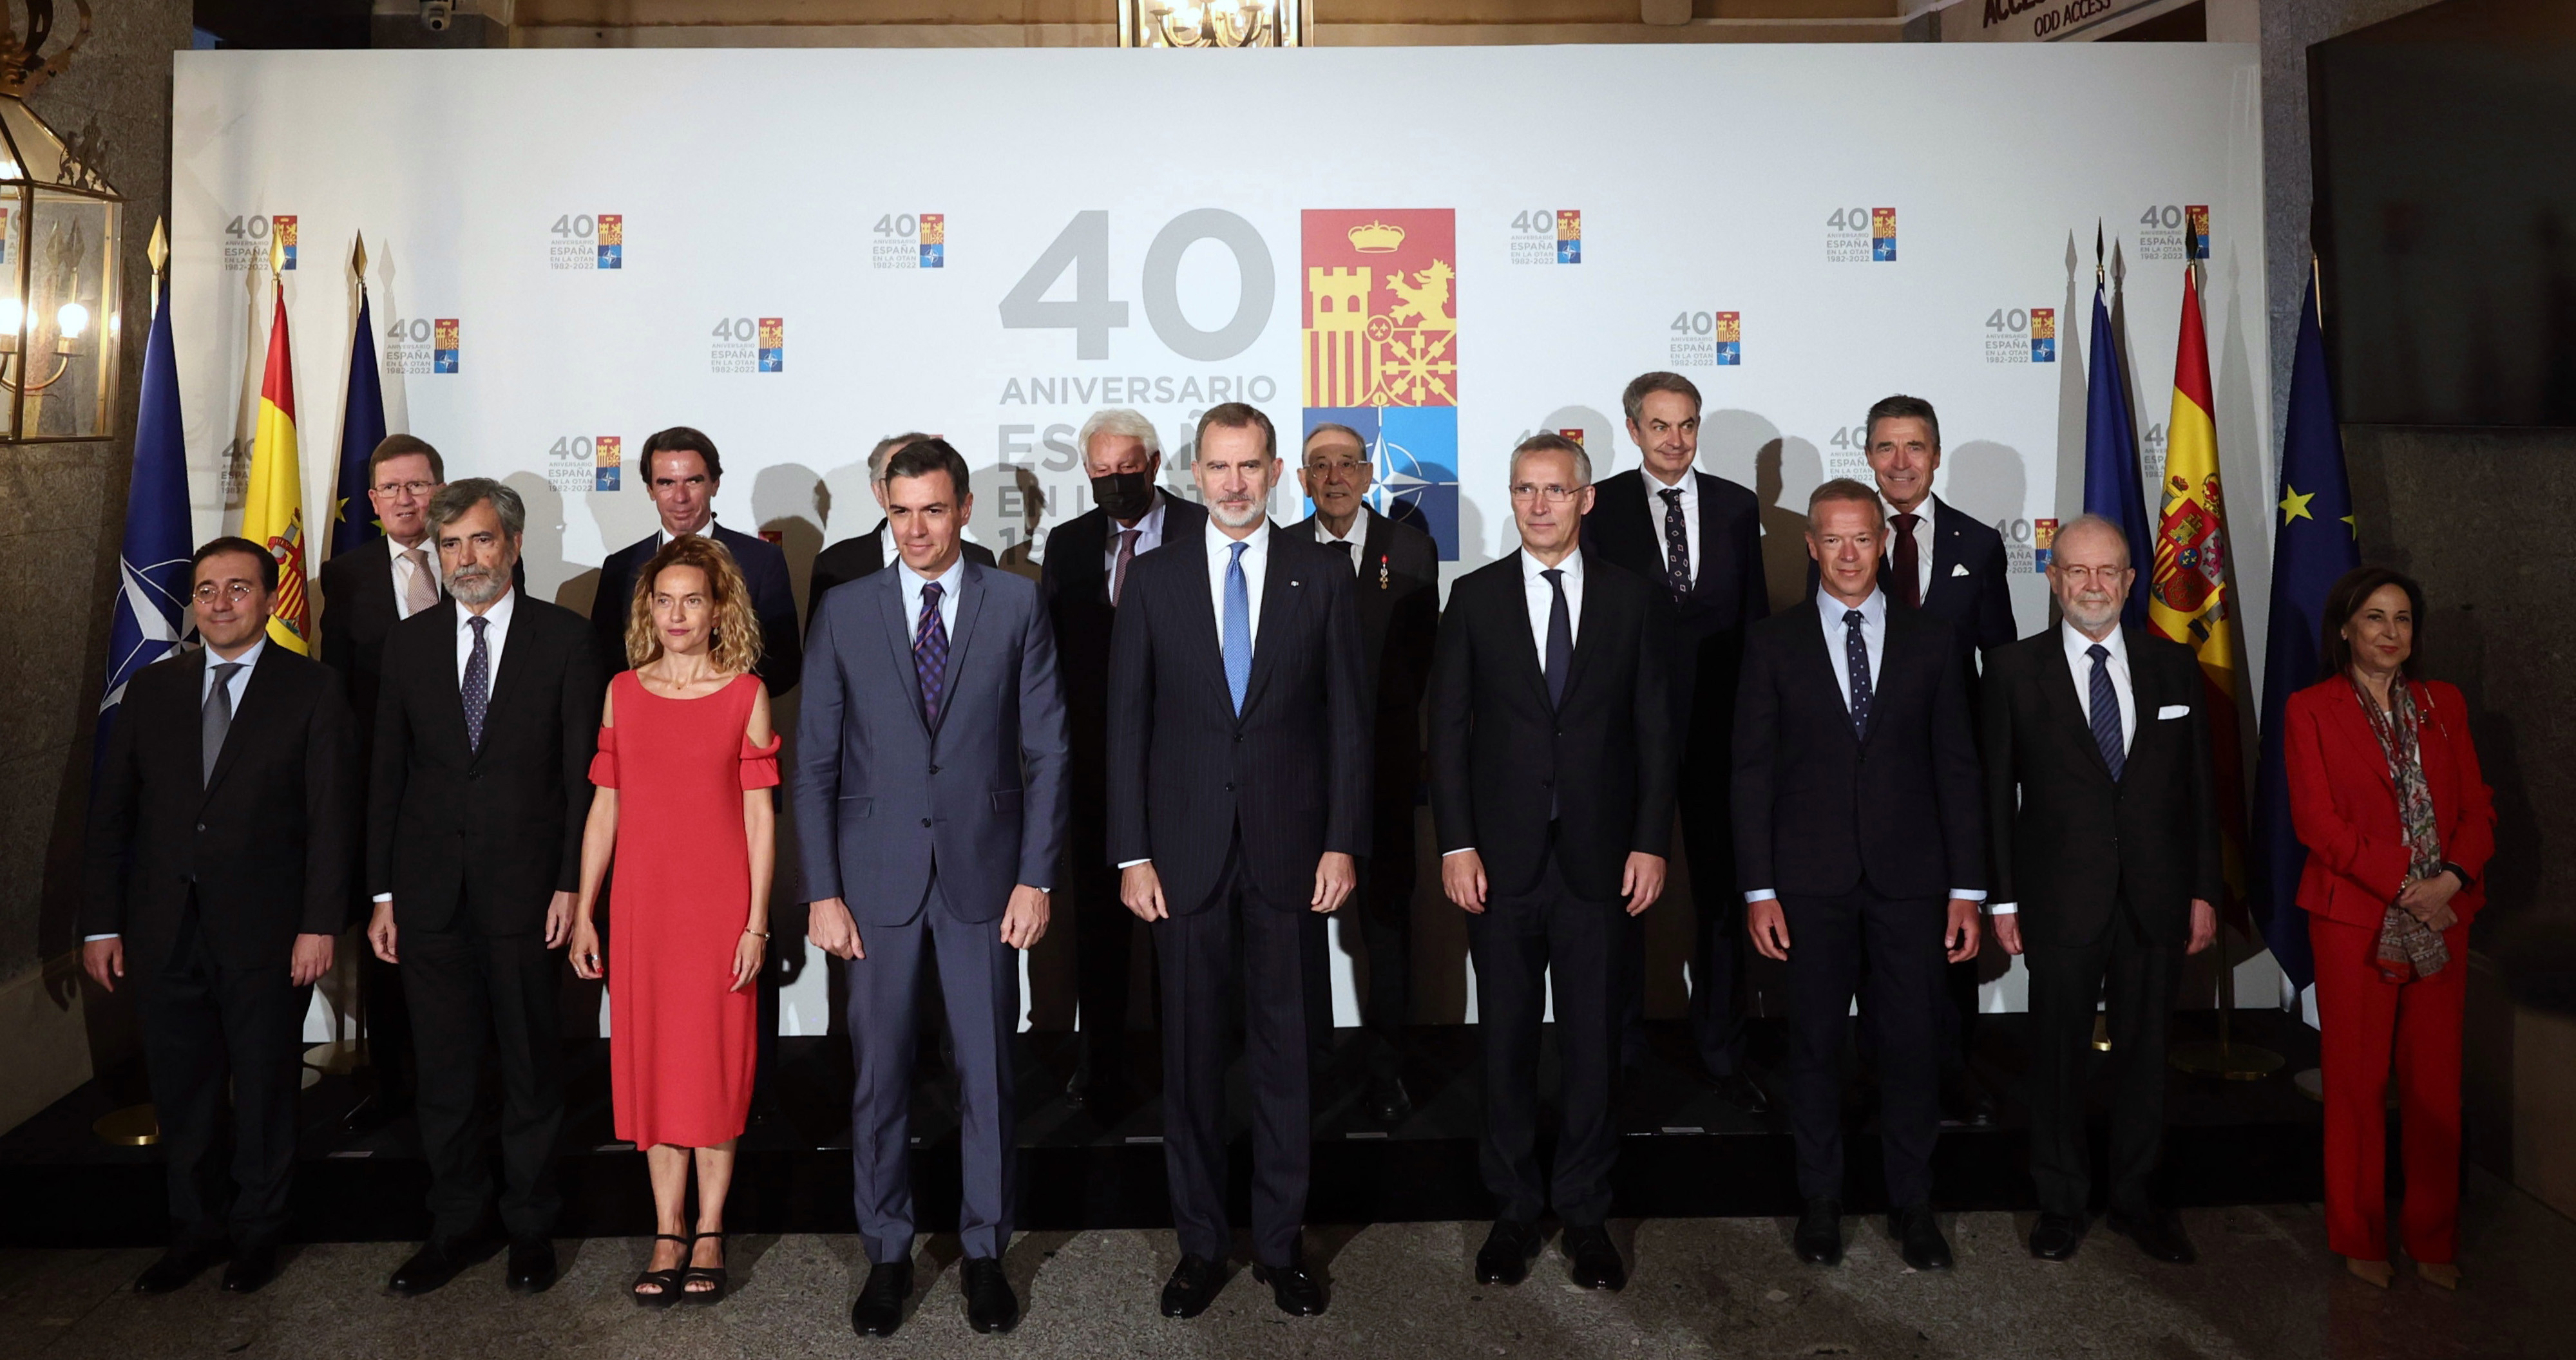 El rey Felipe VI y el presidente del Gobierno, Pedro Sánchez, posan en el acto de conmemoración del 40º Aniversario del ingreso de España en la OTAN, en el Teatro Real, en Madrid / EP